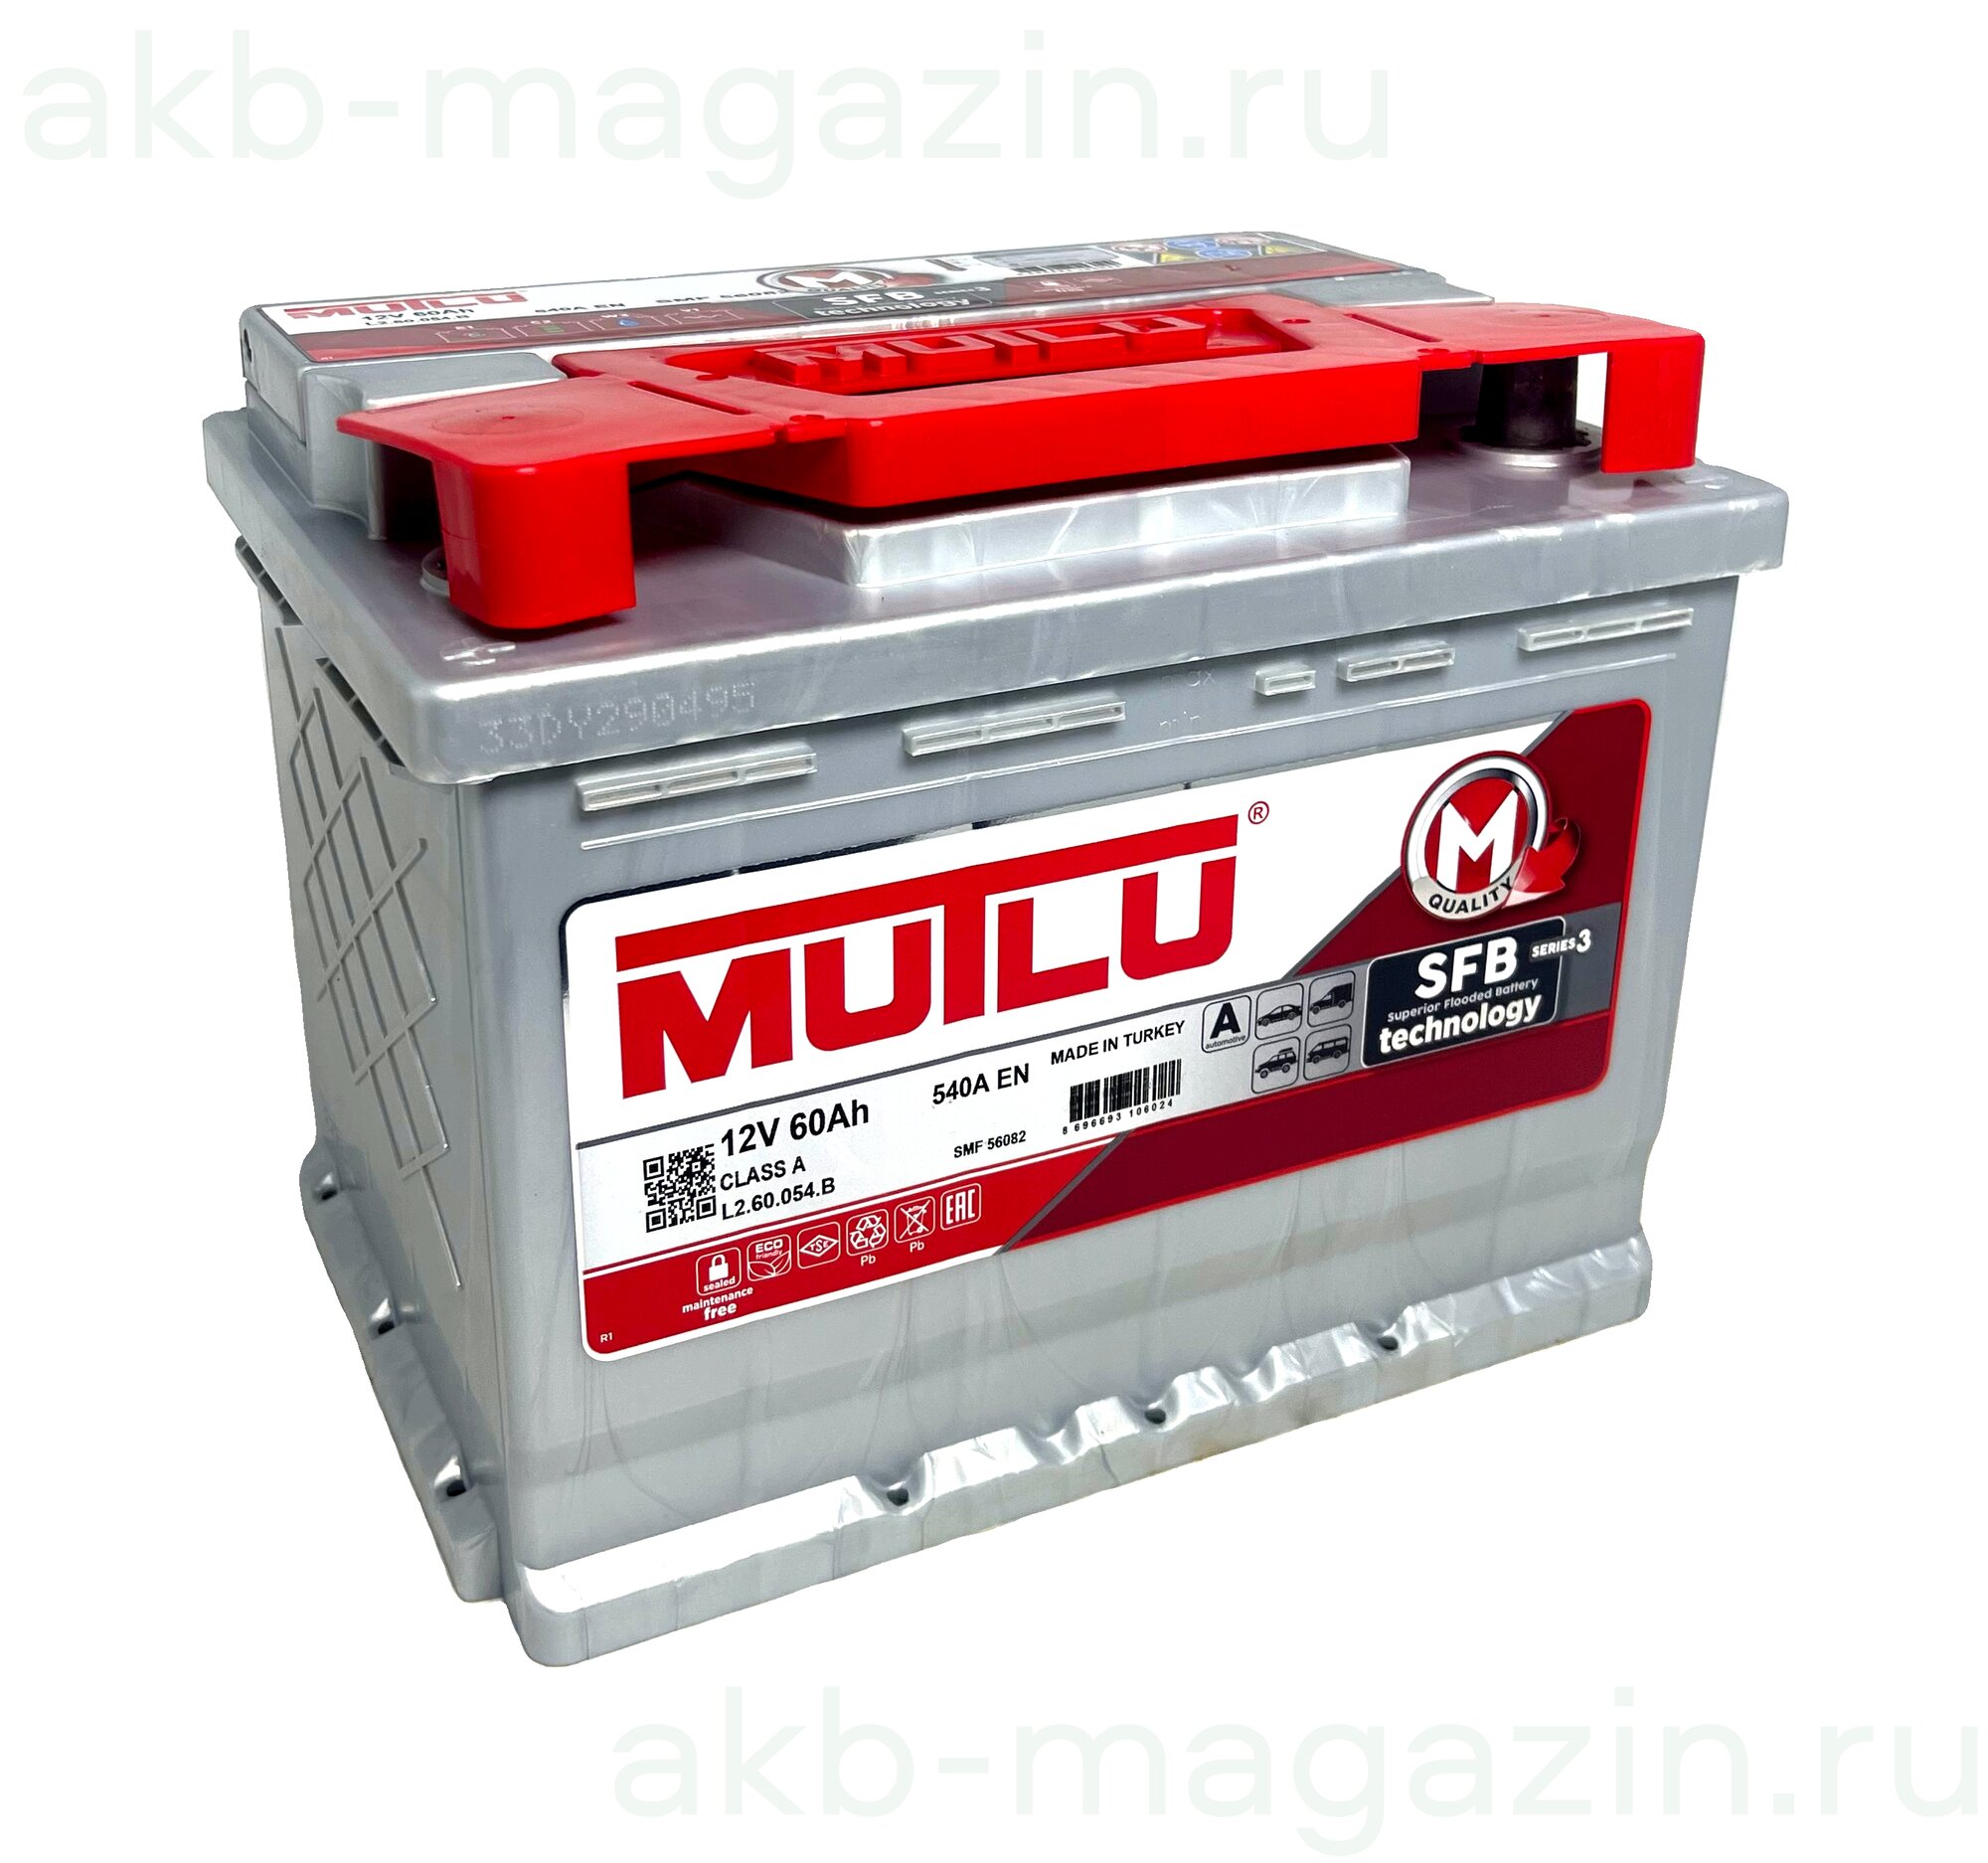 Аккумулятор для спецтехники Mutlu SFB 3 (L2.60.054.B) 242х175х190